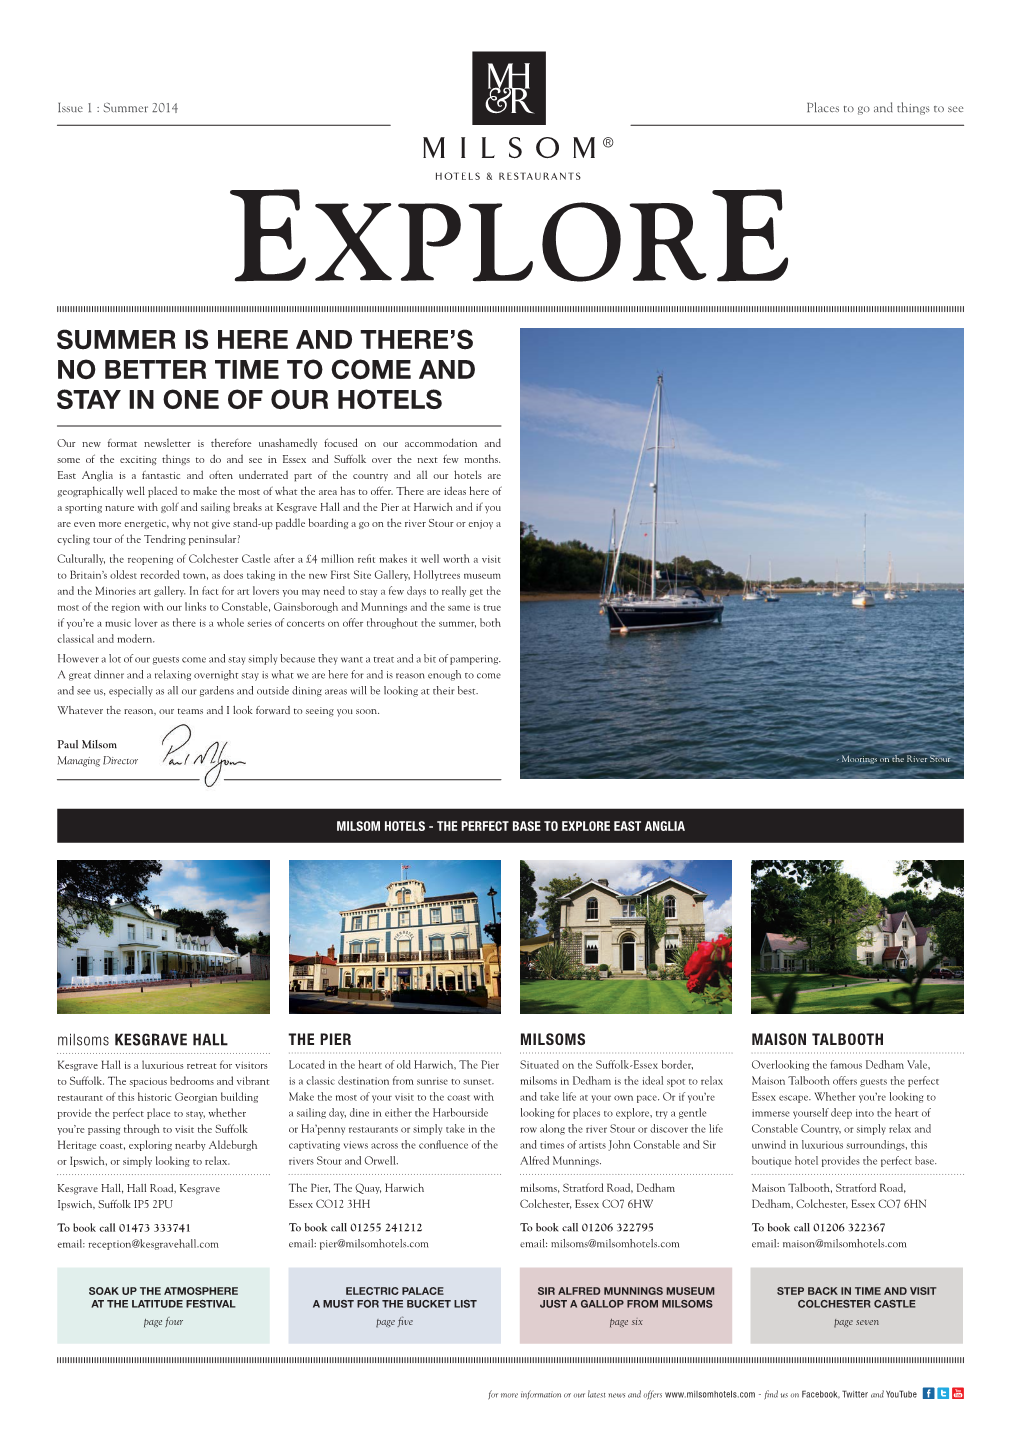 Milsom Hotels & Restaurants Explore Newsletter